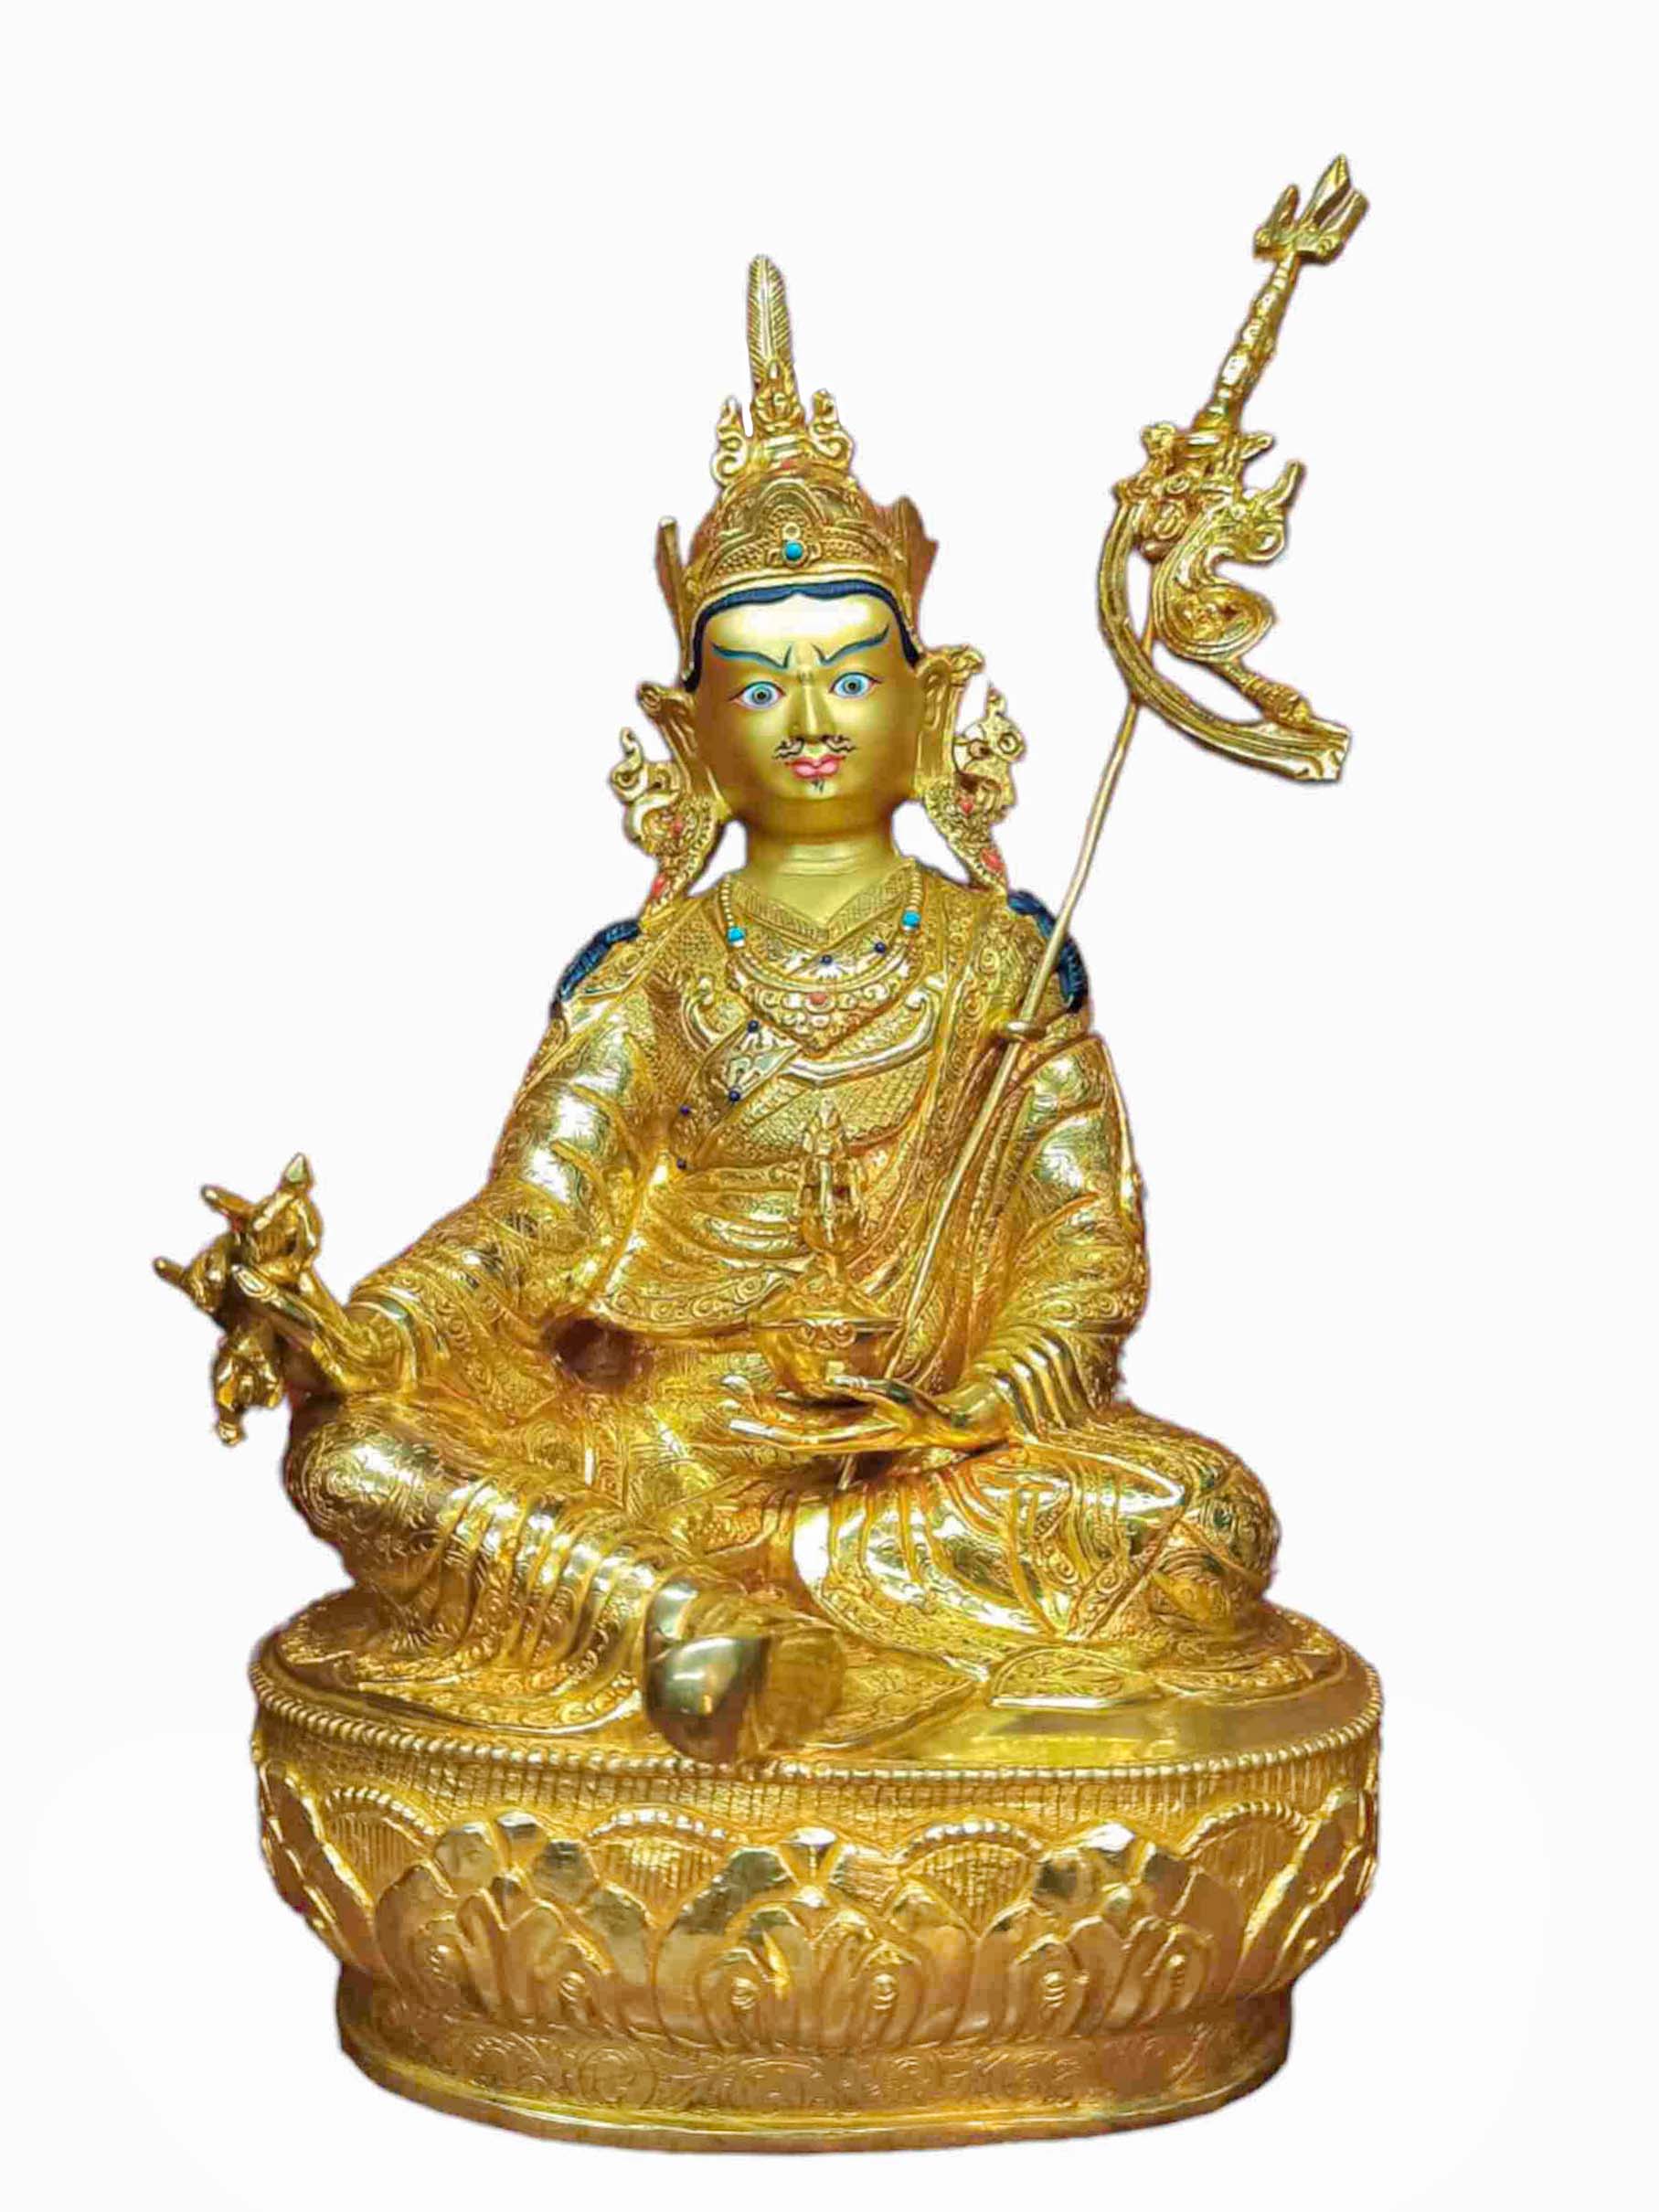 Buddhist Handmade Statue Of Padmasambhava, full Gold Plated, Stone Setting, Face Painted